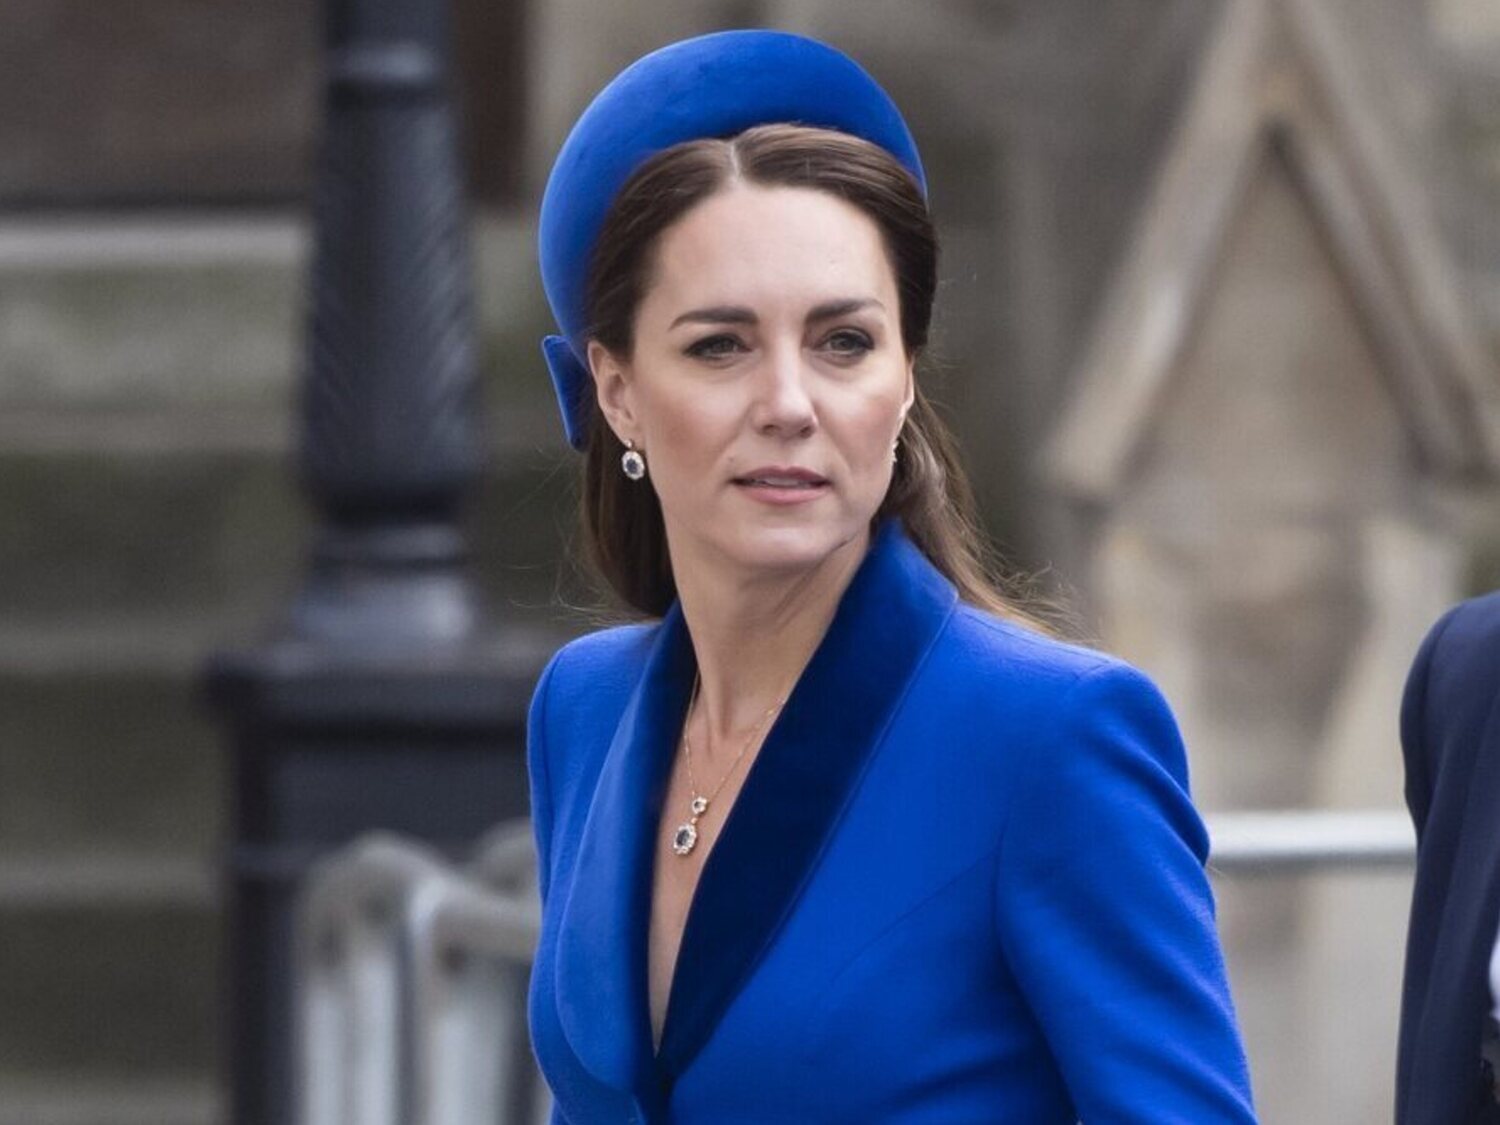 Preocupación por la salud Kate Middleton tras su operación: "Su evolución no está siendo la esperada"